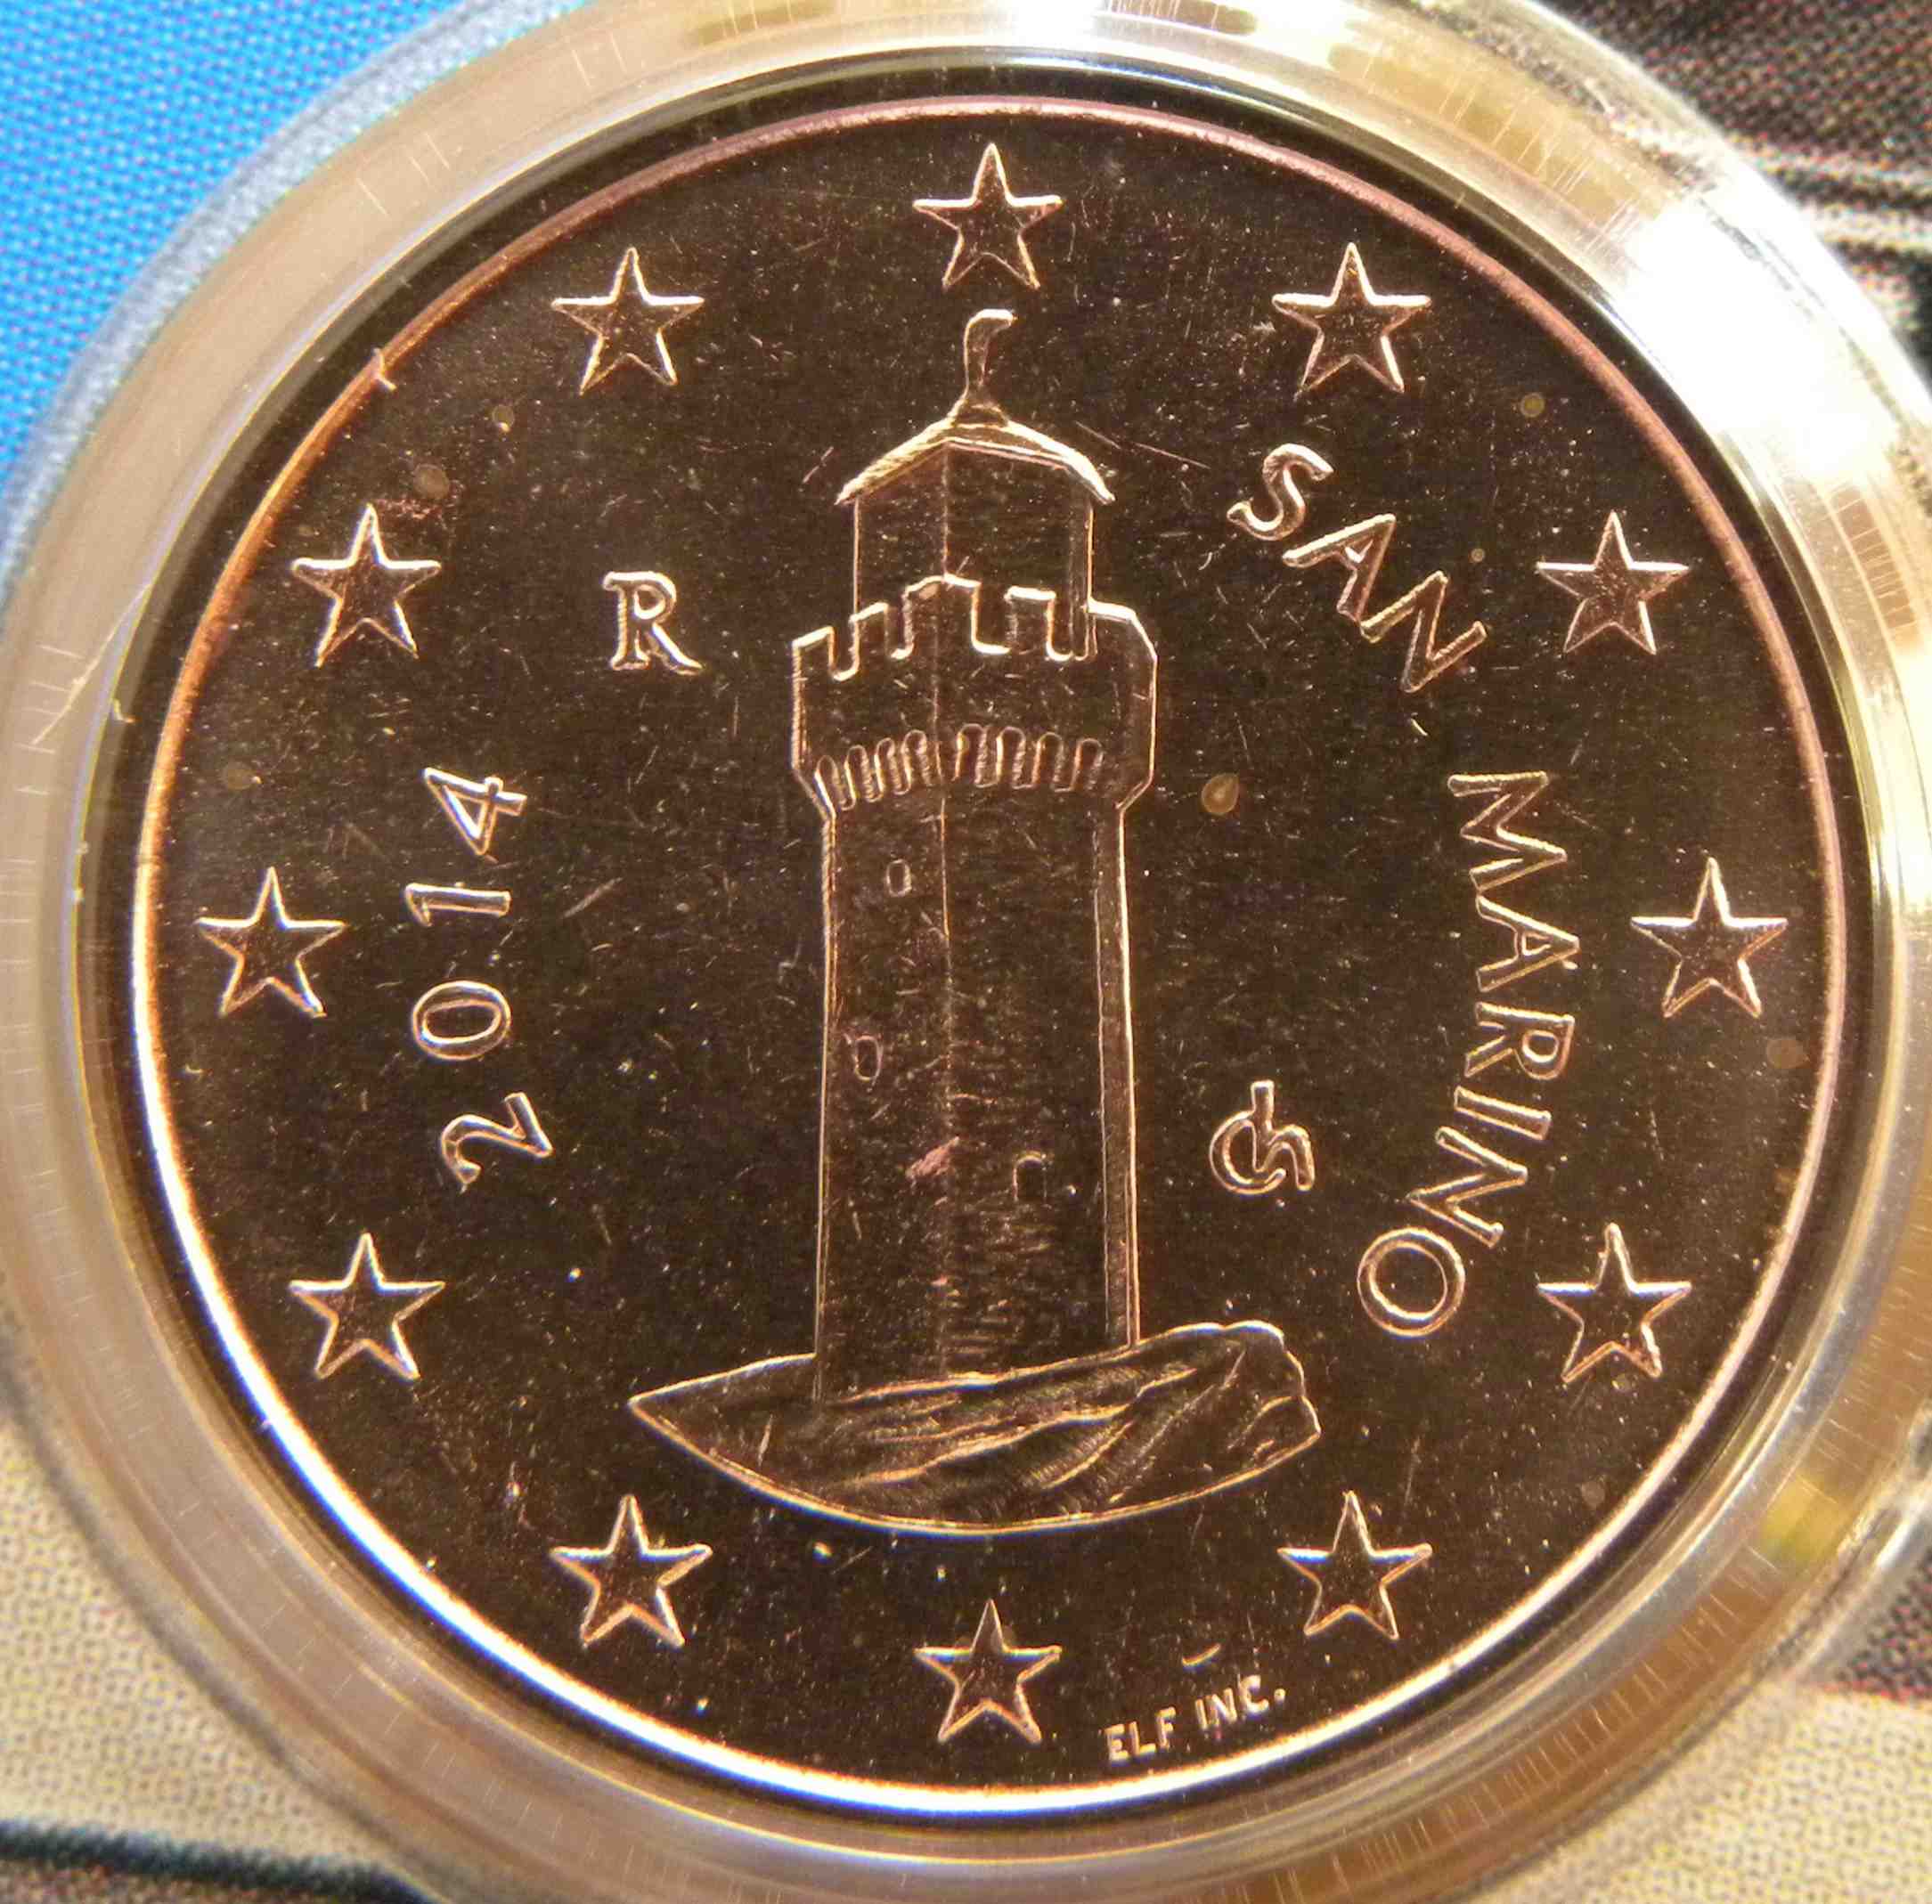 San Marino 1 Cent Münze 2014 - euro-muenzen.tv - Der Online Euromünzen